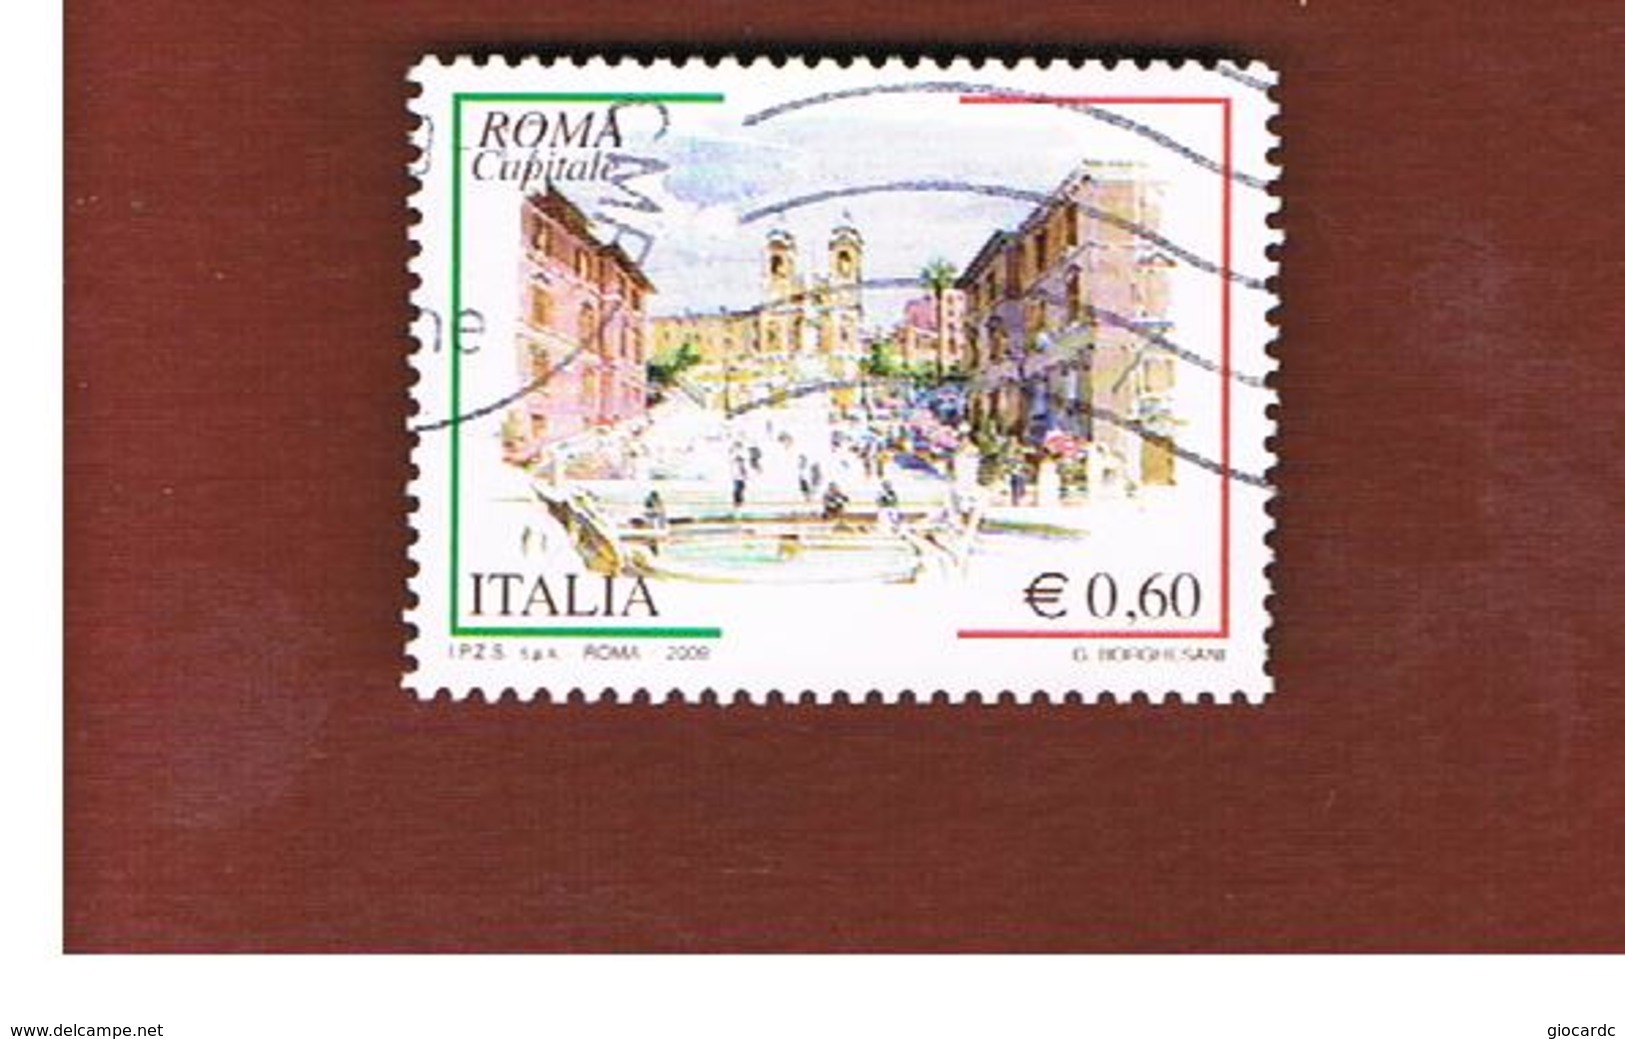 ITALIA REPUBBLICA  -   2009 ROMA CAPITALE   -   USATO  ° - 2001-10: Used